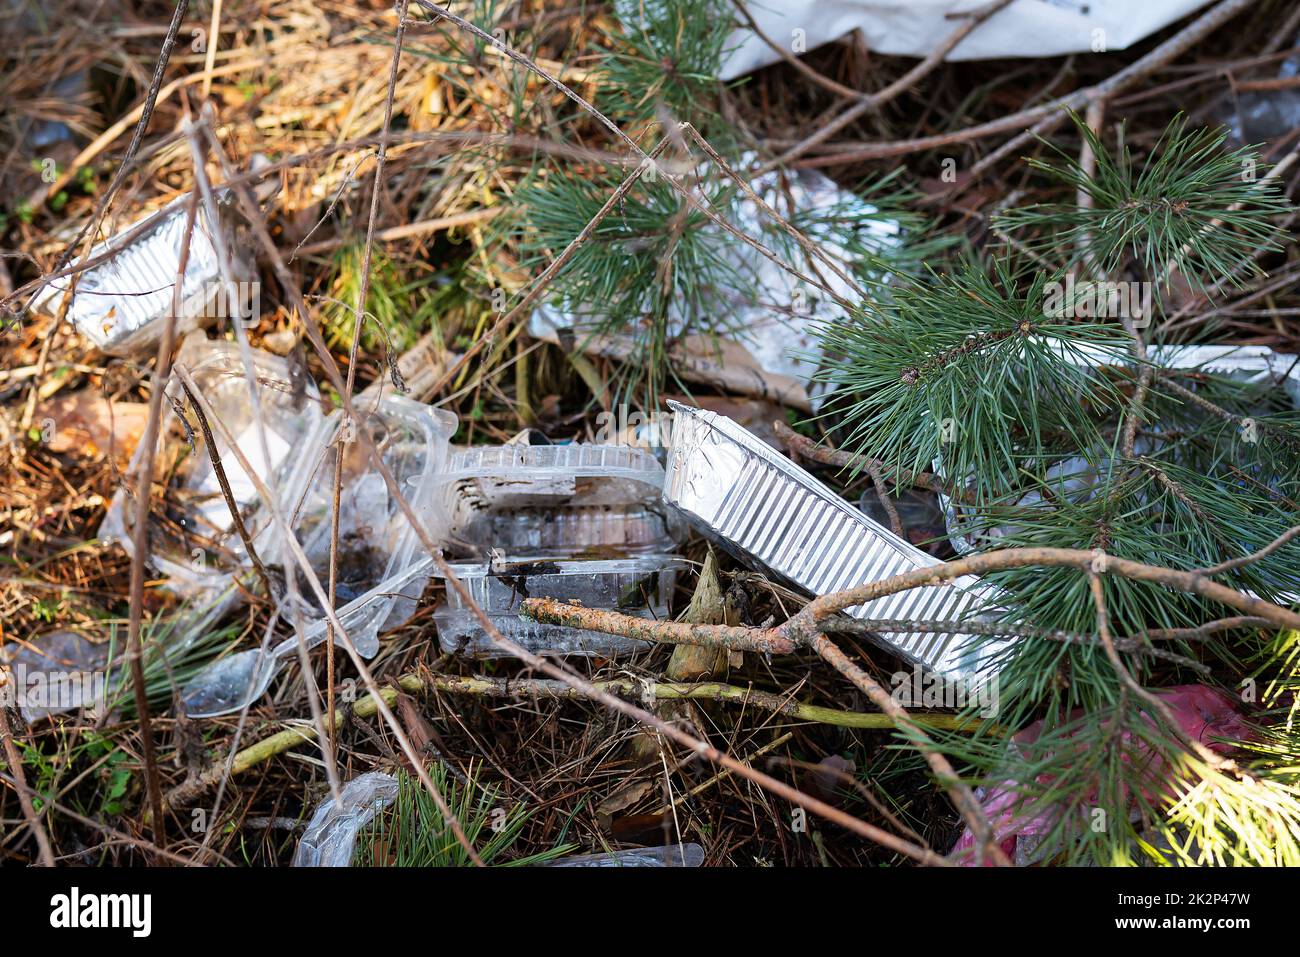 Viele Einwegbehälter aus Kunststoff, Abfall liegt in einer dicken Schicht in der Wildnis und zieht Vögel und Nagetiere an. Umweltverschmutzung. Stockfoto